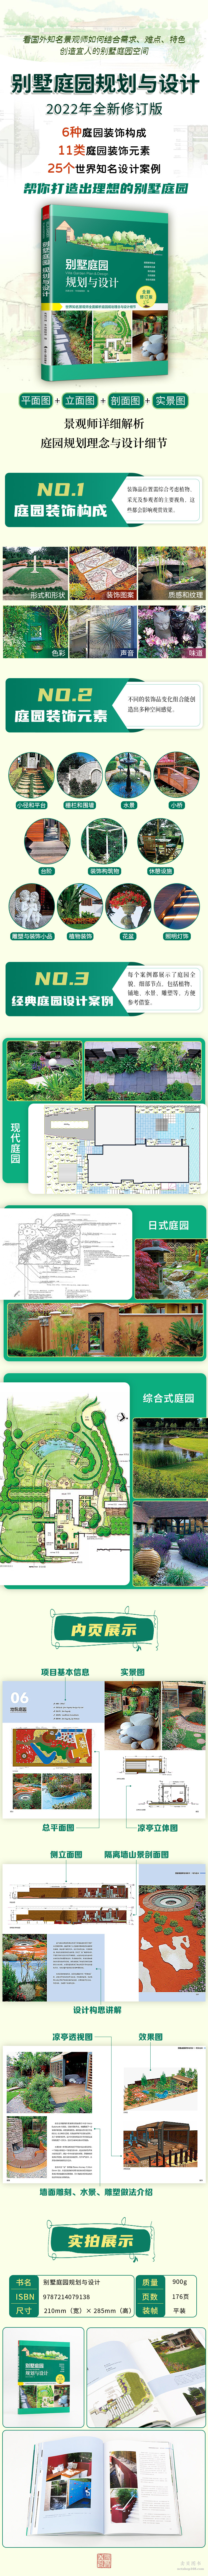 《别墅庭园规划与设计 别墅自建房民宿庭院绿化设计景观设计花园改造私家花园打造赠CAD图纸》